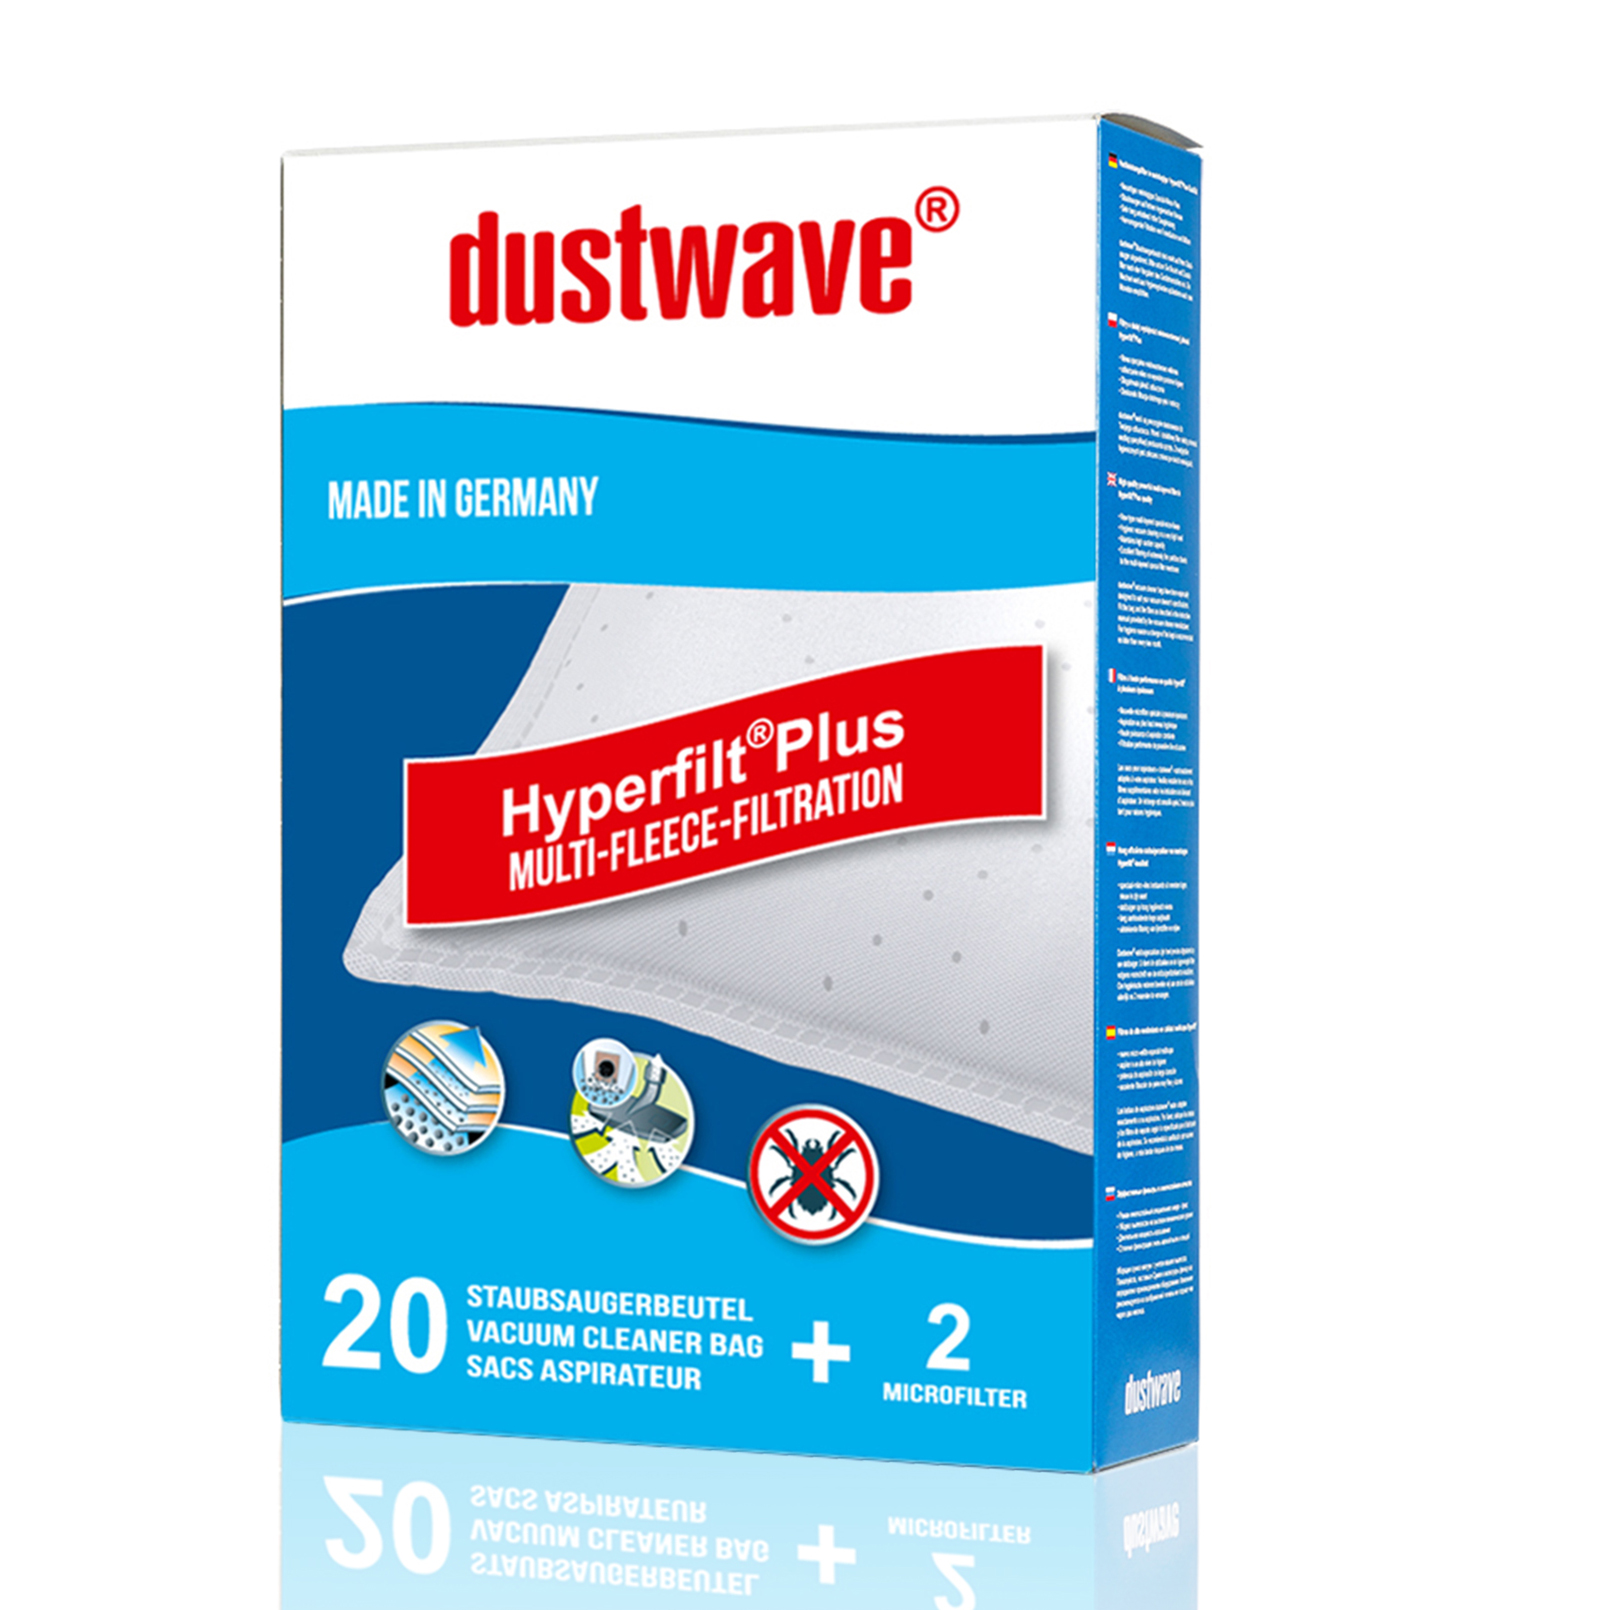 Dustwave® 5 Staubsaugerbeutel für Miele Medicair Plus 800 - hocheffizient, mehrlagiges Mikrovlies mit Hygieneverschluss - Made in Germany